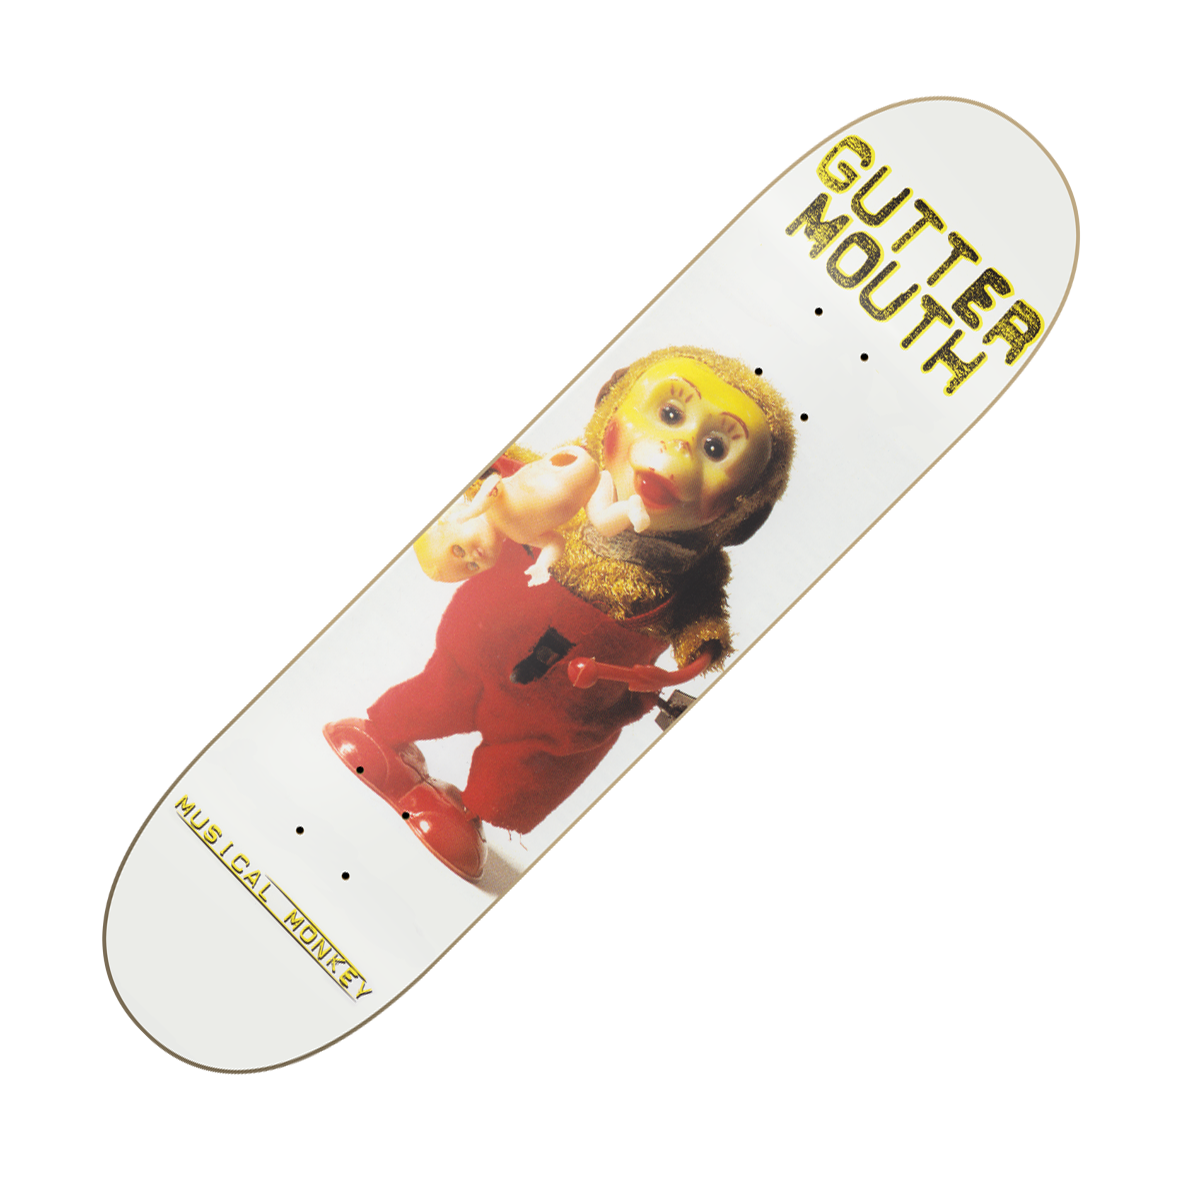 GUTTERMOUTH - "Musical Monkey" (Skateboard Deck)